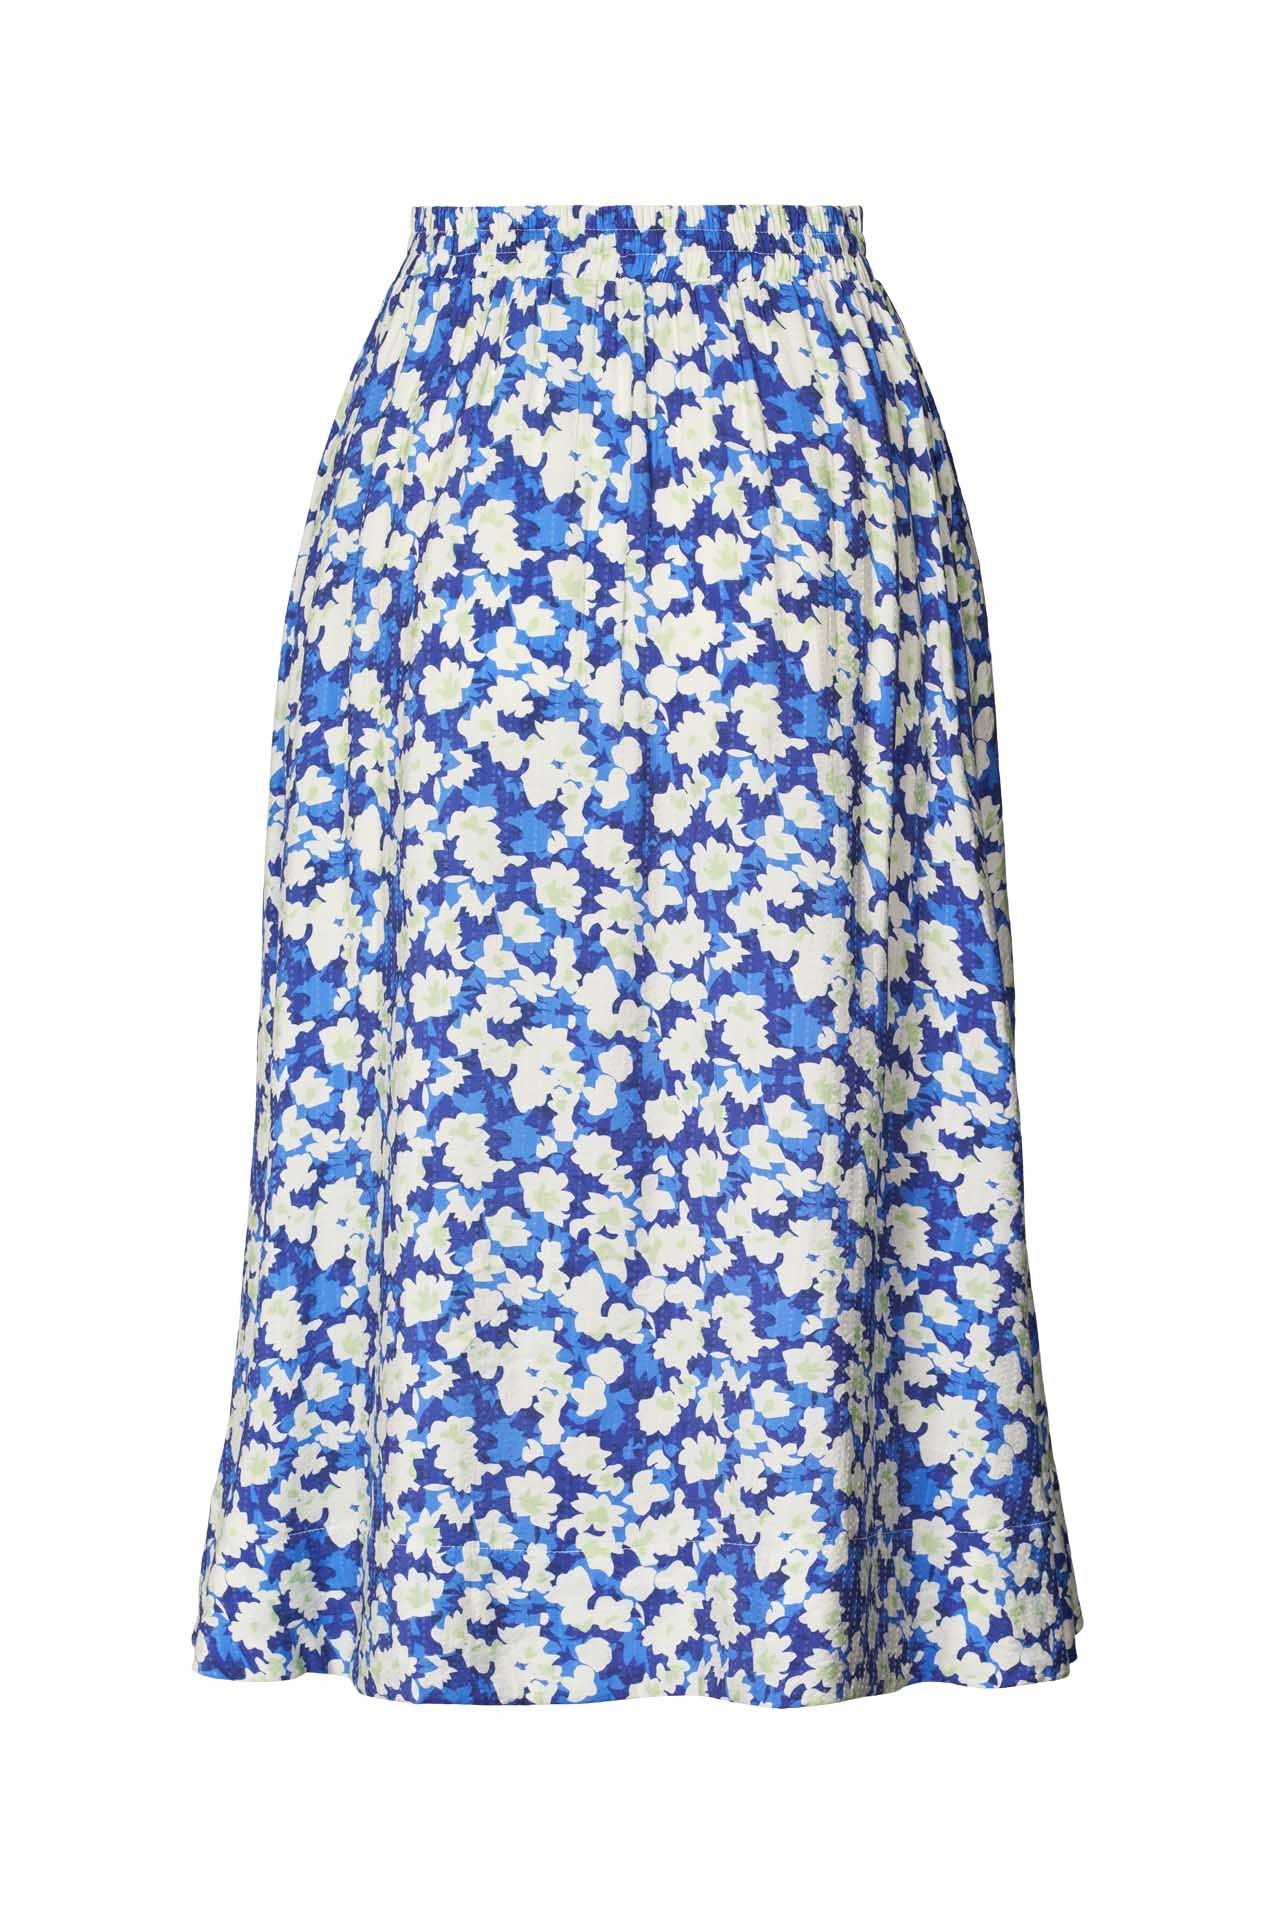 Lollys Laundry - Morning Skirt Blue Floral